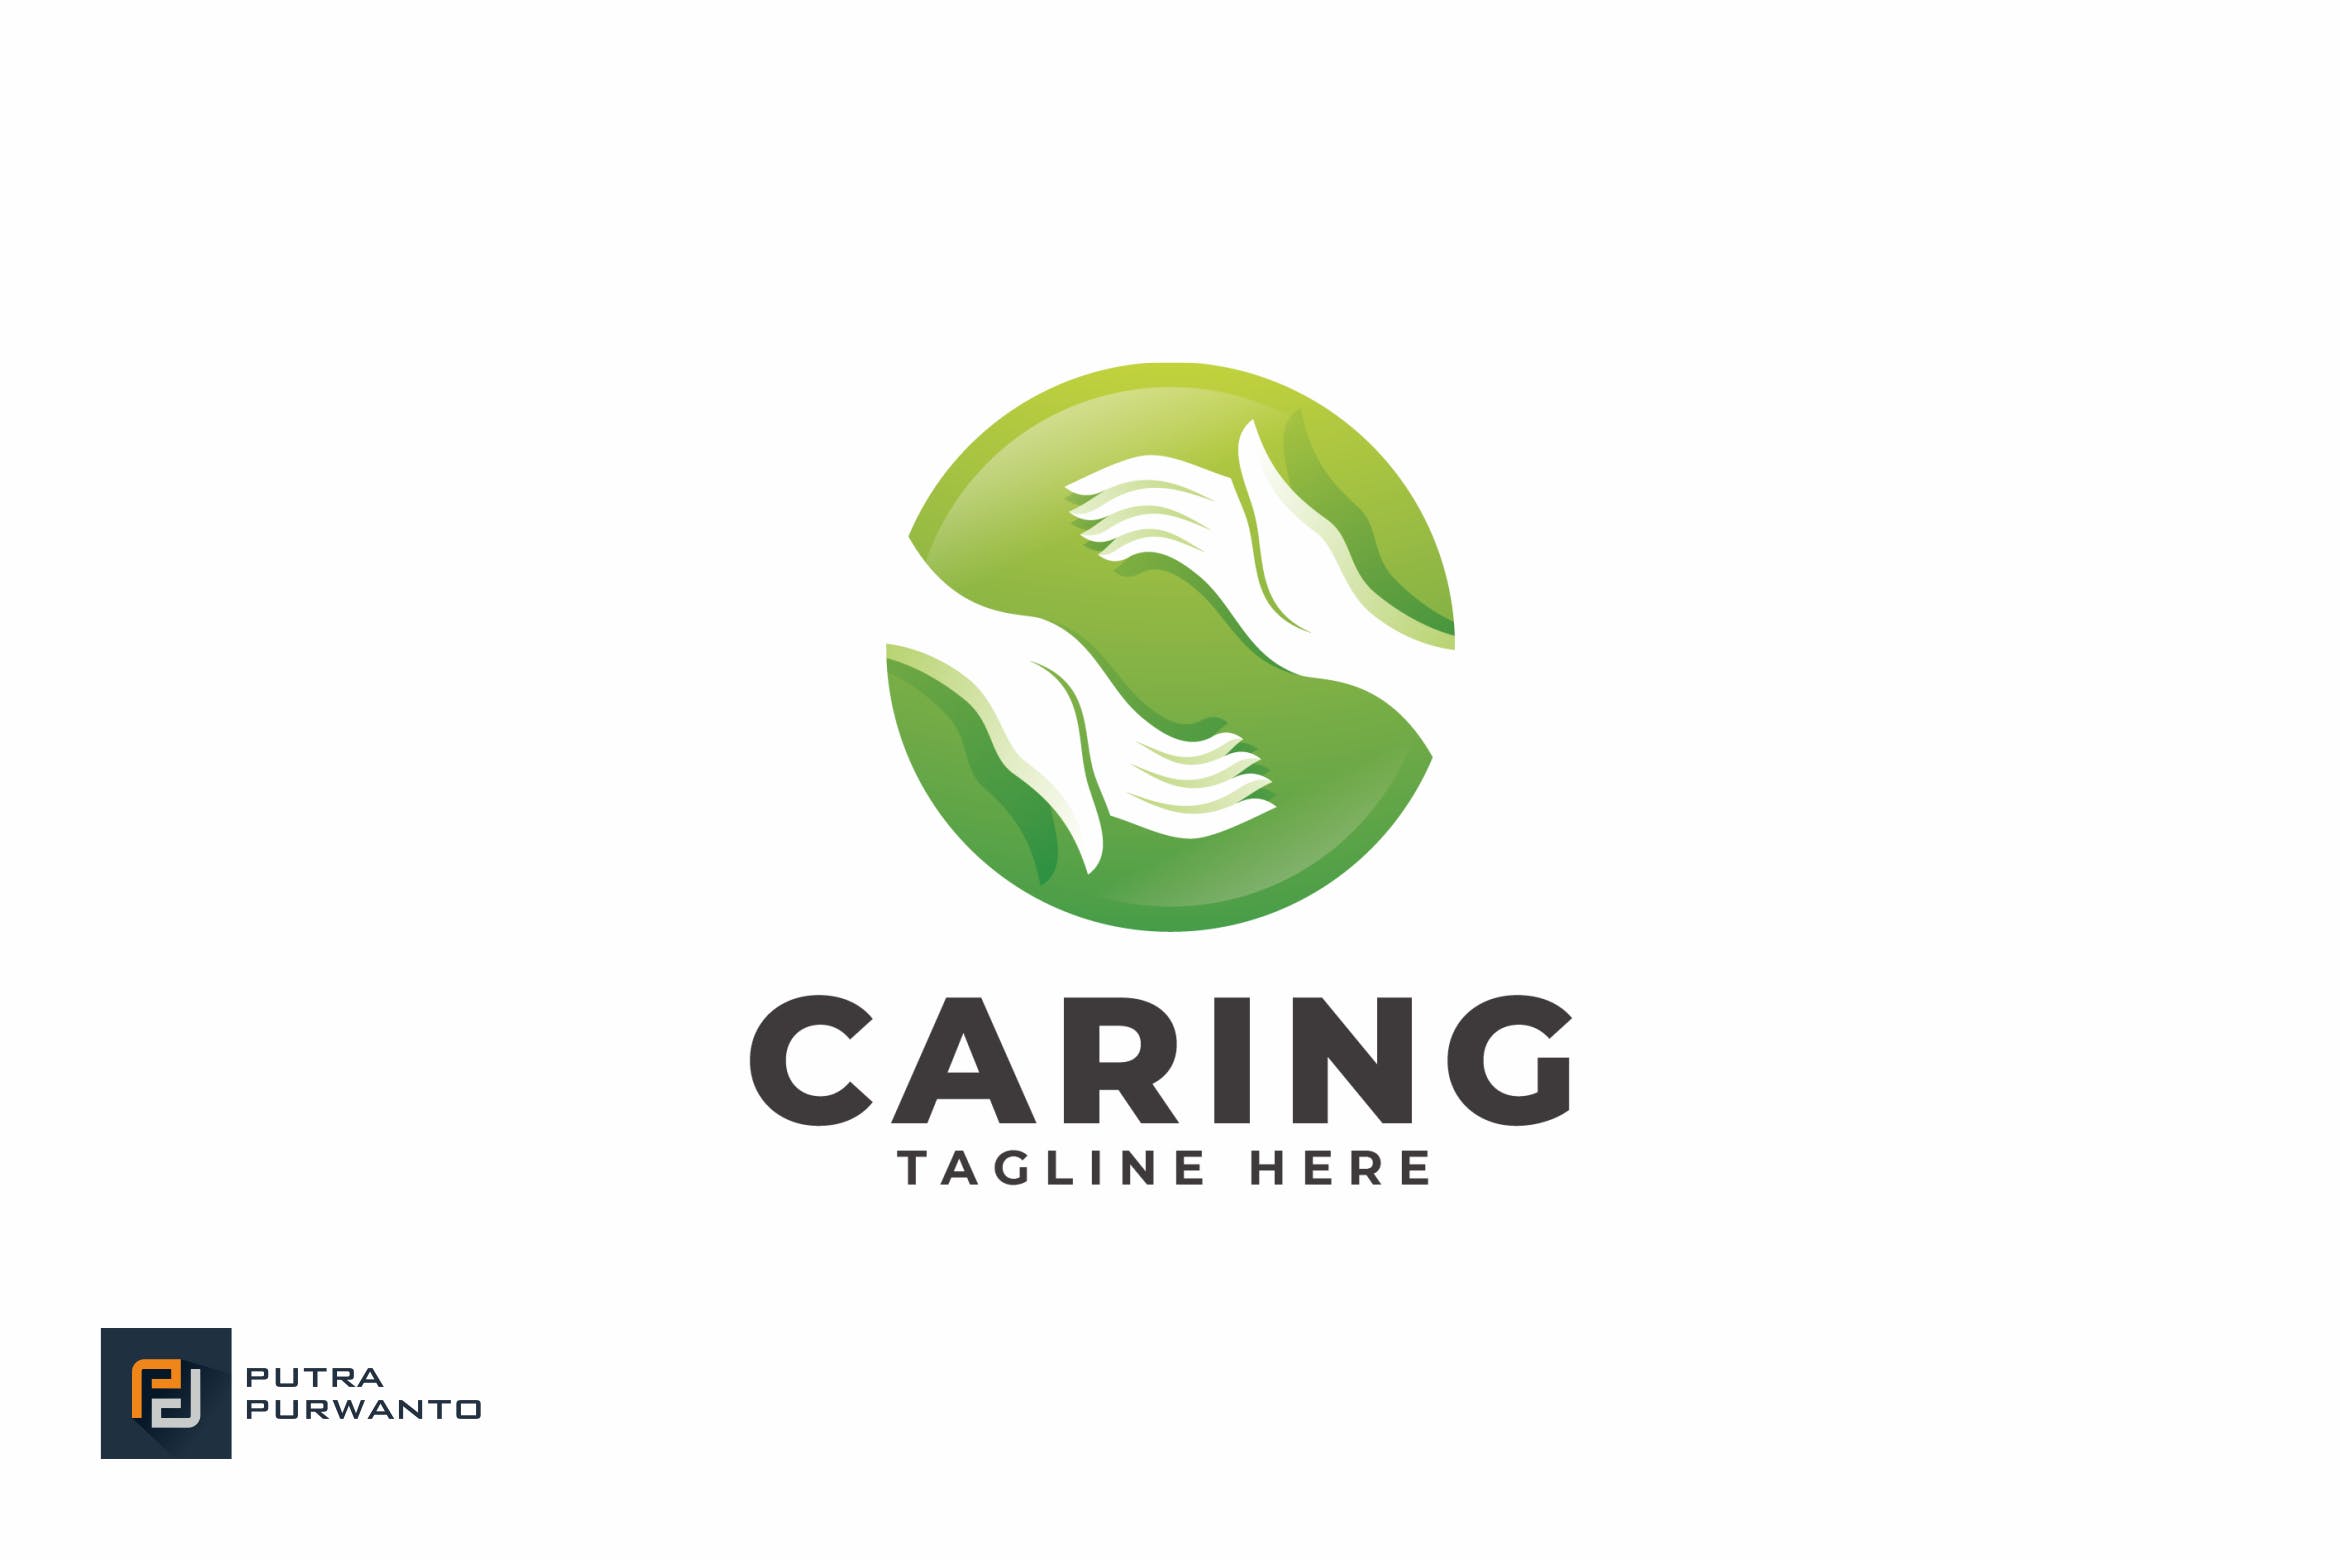 爱心慈善互助机构概念Logo设计模板 Caring – Logo Template插图